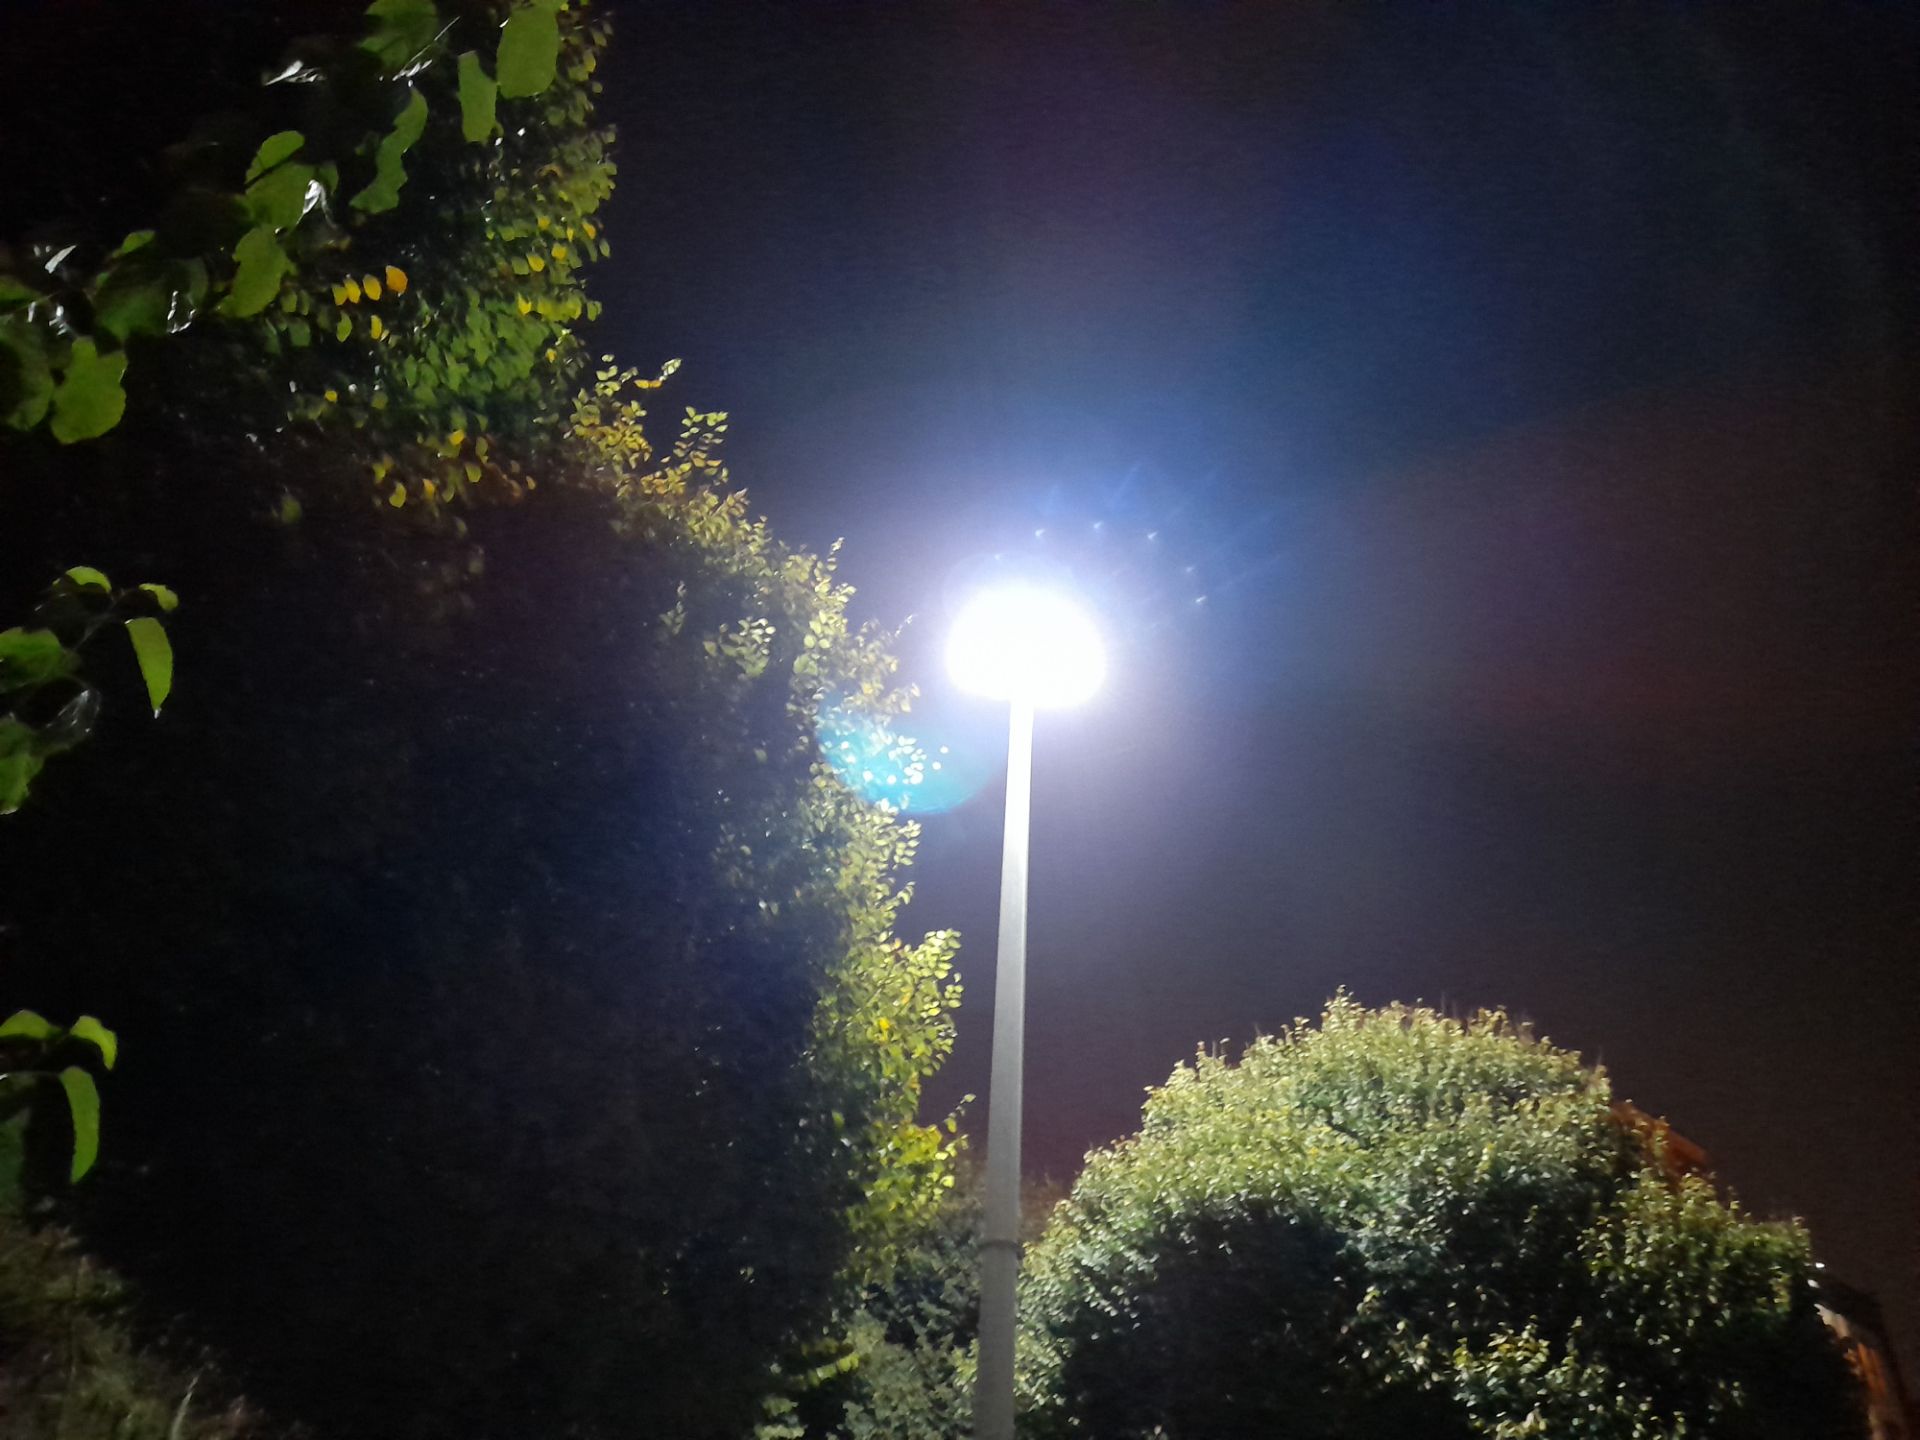 نمونه عکس دوربین واید گلکسی A21s در تاریکی - چراغی در پارک ساحل شاهین شمالی